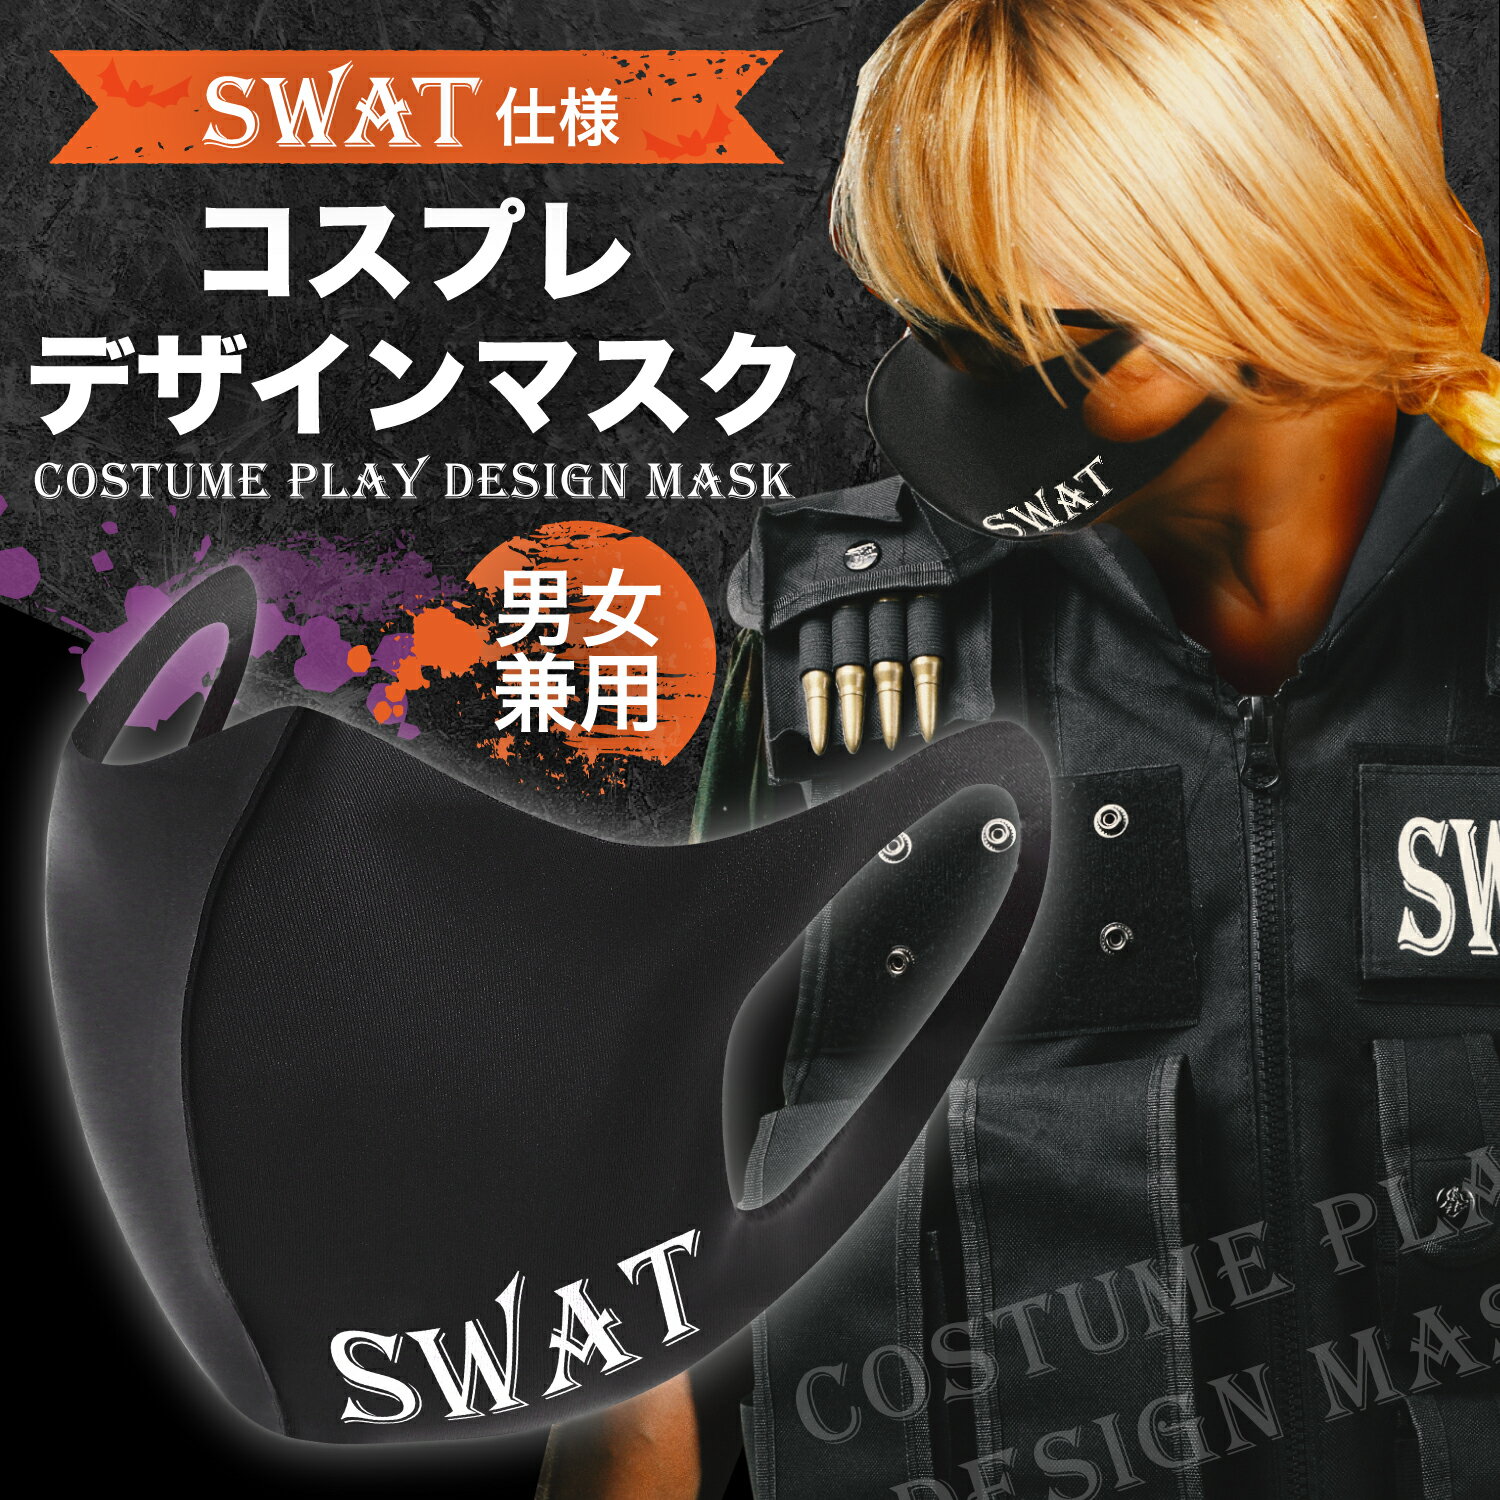 SWAT コスプレ マスク SWAT コスプレ コスチューム ミリタリー デザインマスク 男女兼用